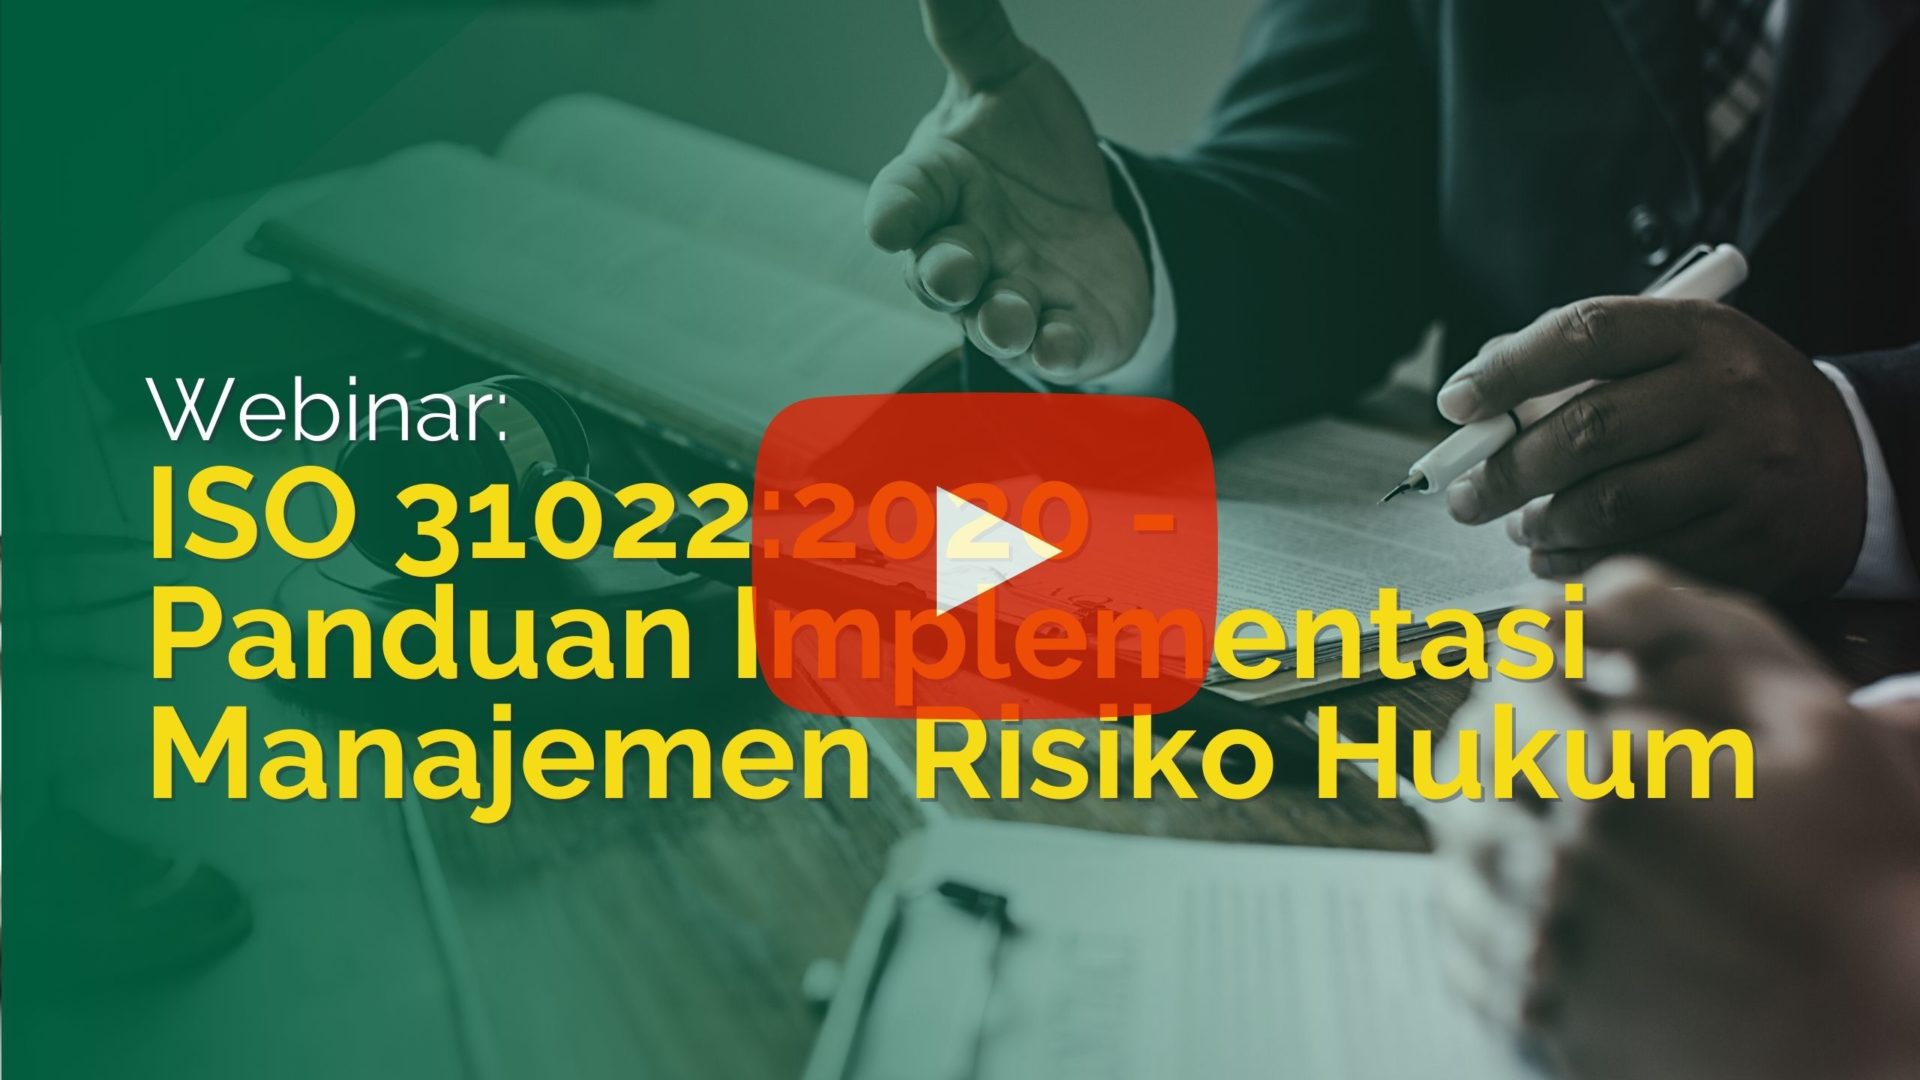 Webinar: ISO 31022:2020 – Panduan Implementasi Manajemen Risiko Hukum